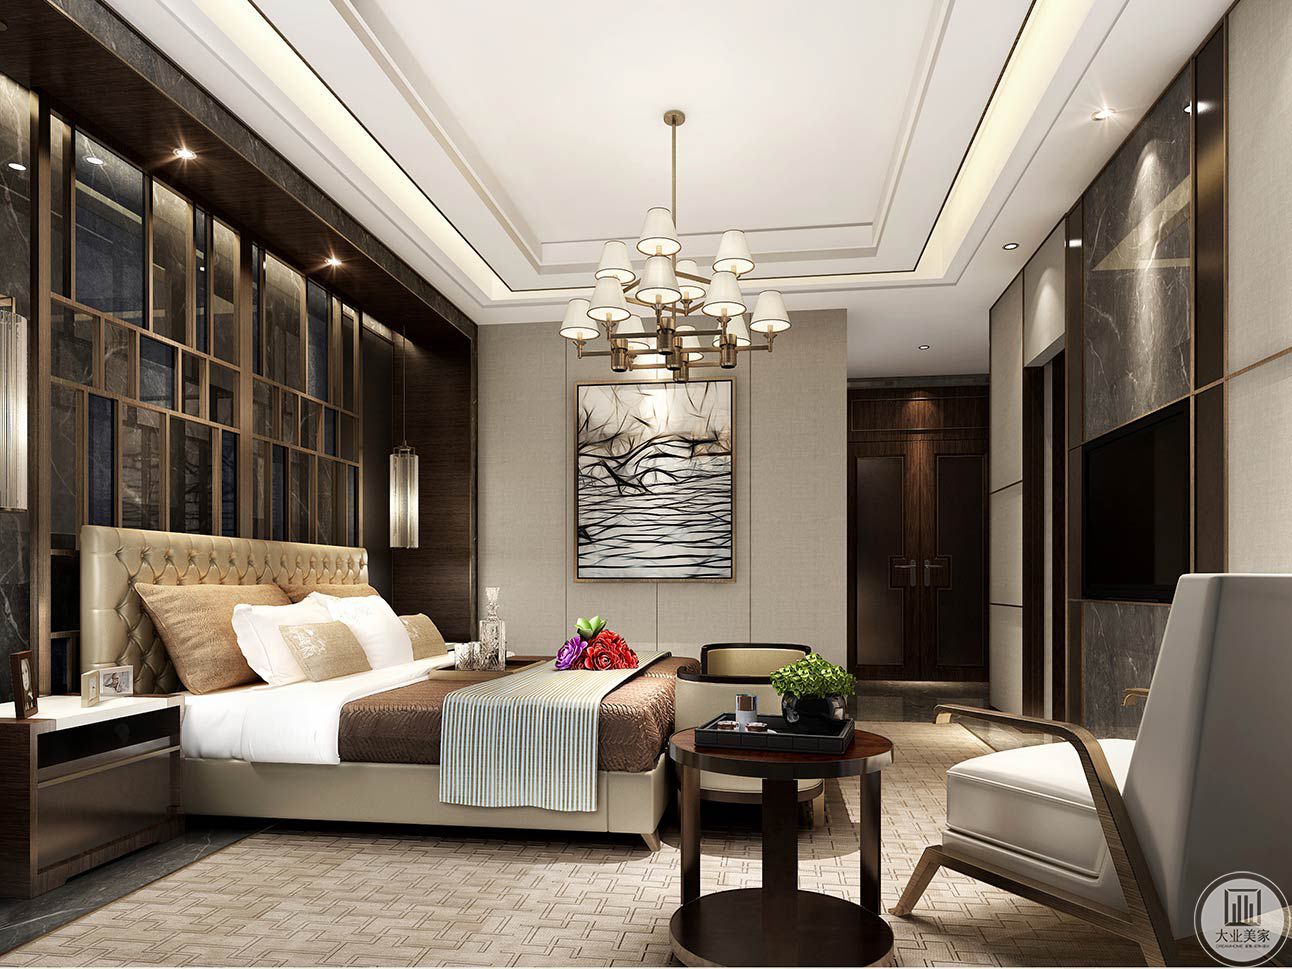 卧室对材料的质感要求很高，简约的设计达到了以简盛繁的效果。